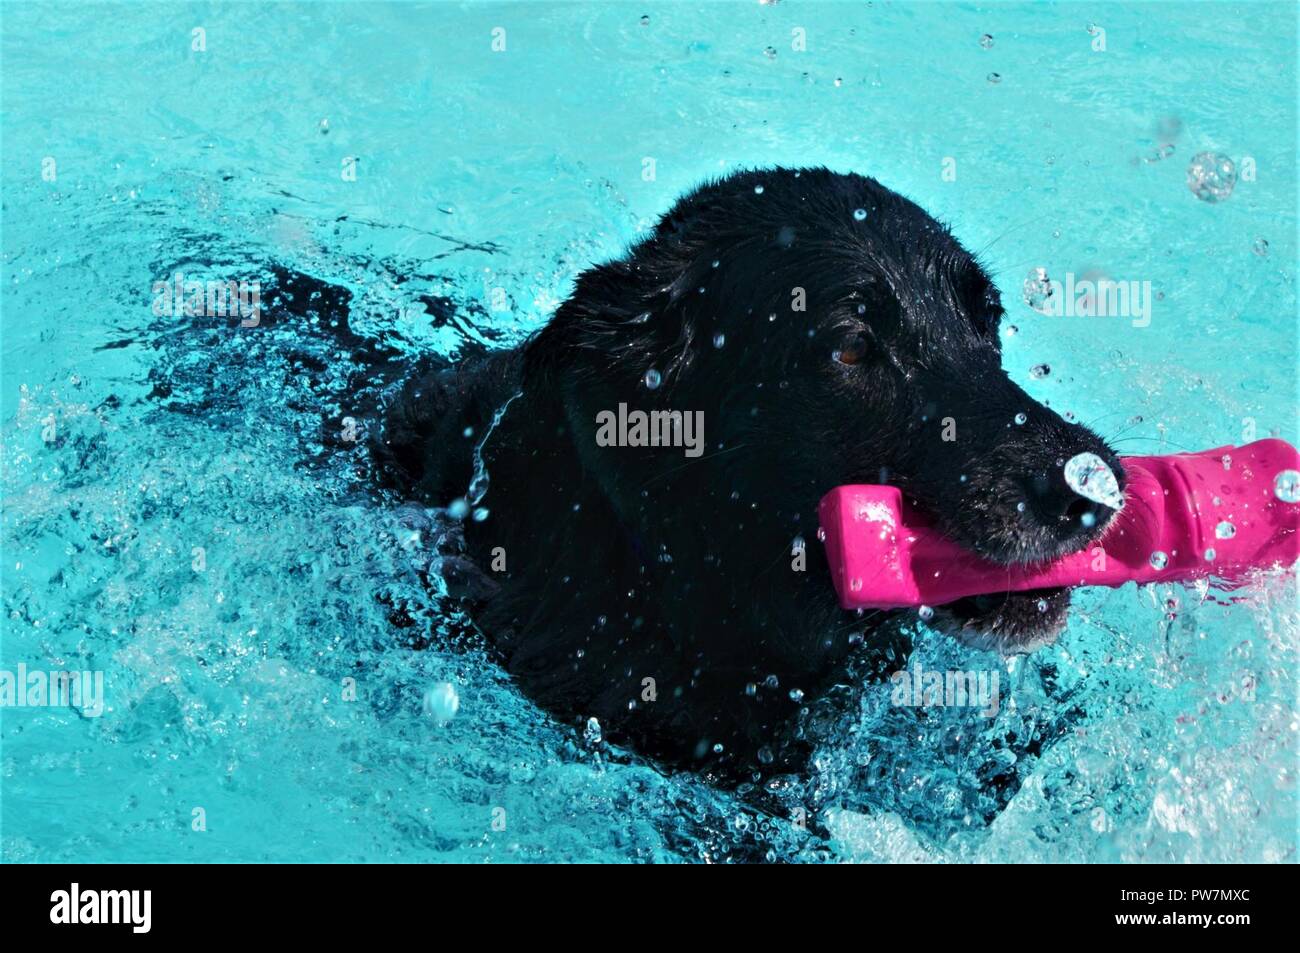 Kiley, un labrador noir, attrape un jouer jouet dans la piscine pendant la troisième Journée annuelle de nager en levrette, 23 septembre 2017 à la piscine de la communauté de Fort Bliss. Kiley est le pet de Morgan Sarrah, le coordonnateur de l'événement pour nager en levrette 24. (L'Armée Banque D'Images